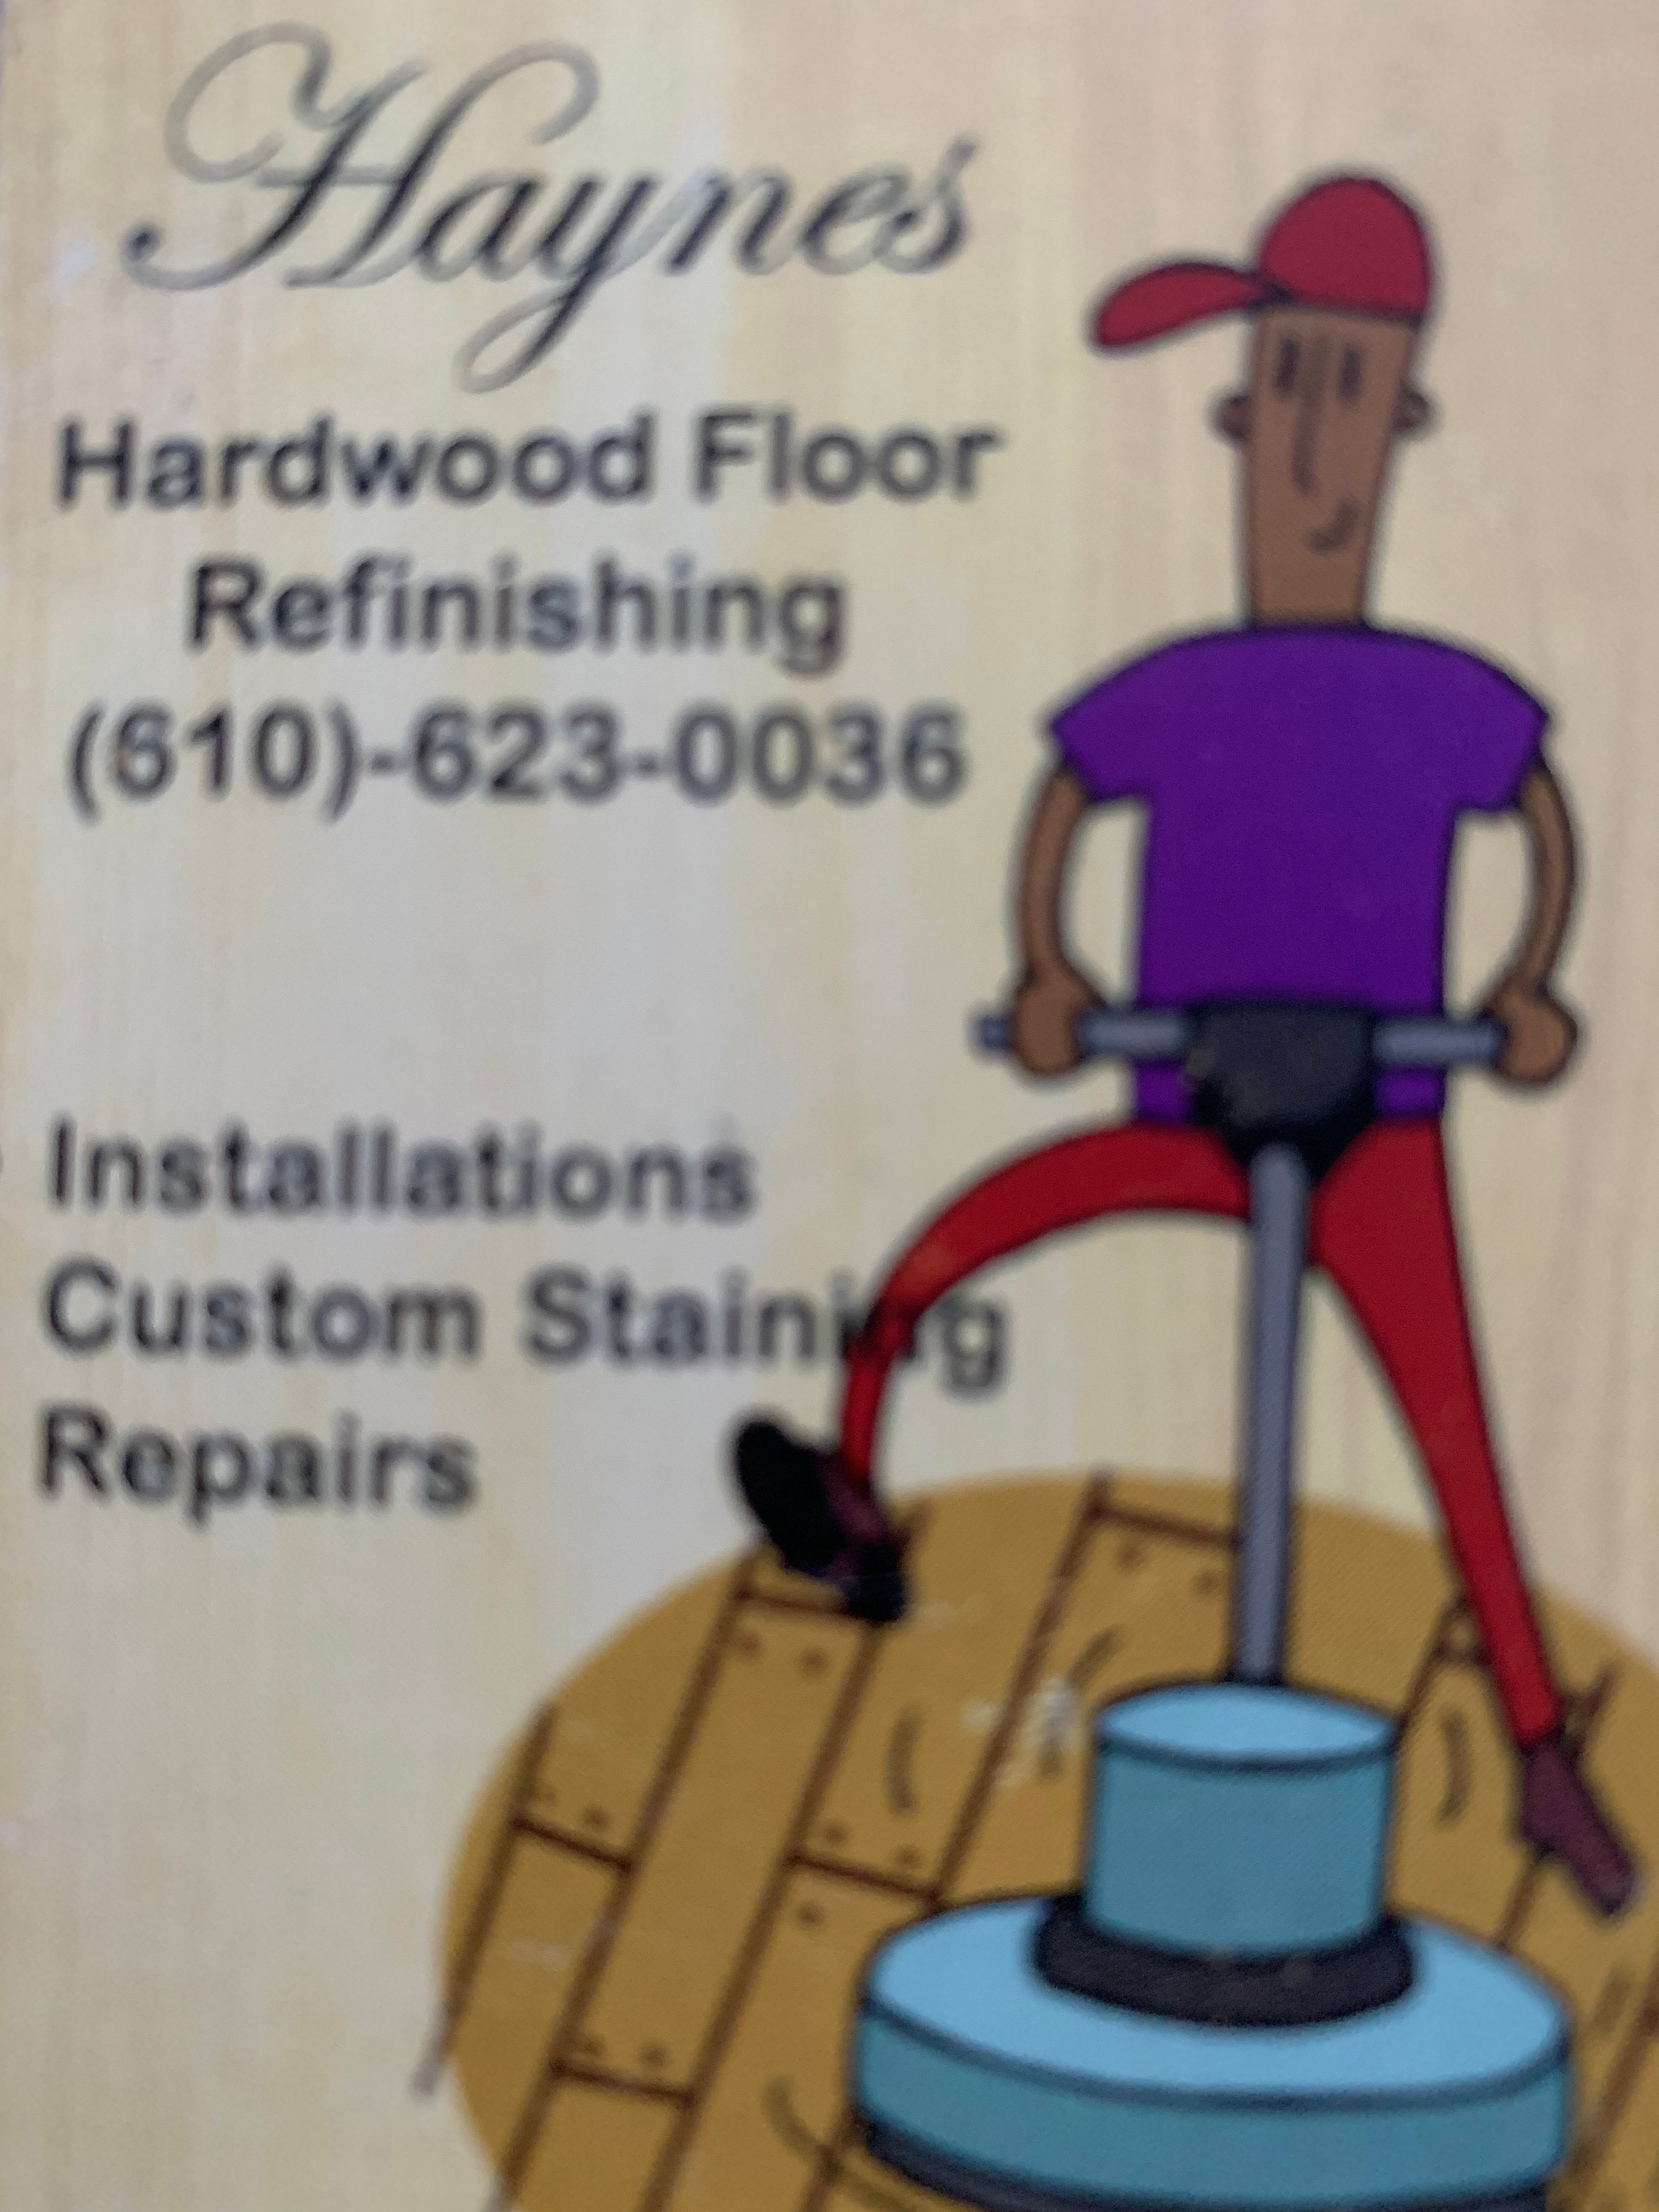 Haynes Hardwood Floor Refinishing, LLC Logo